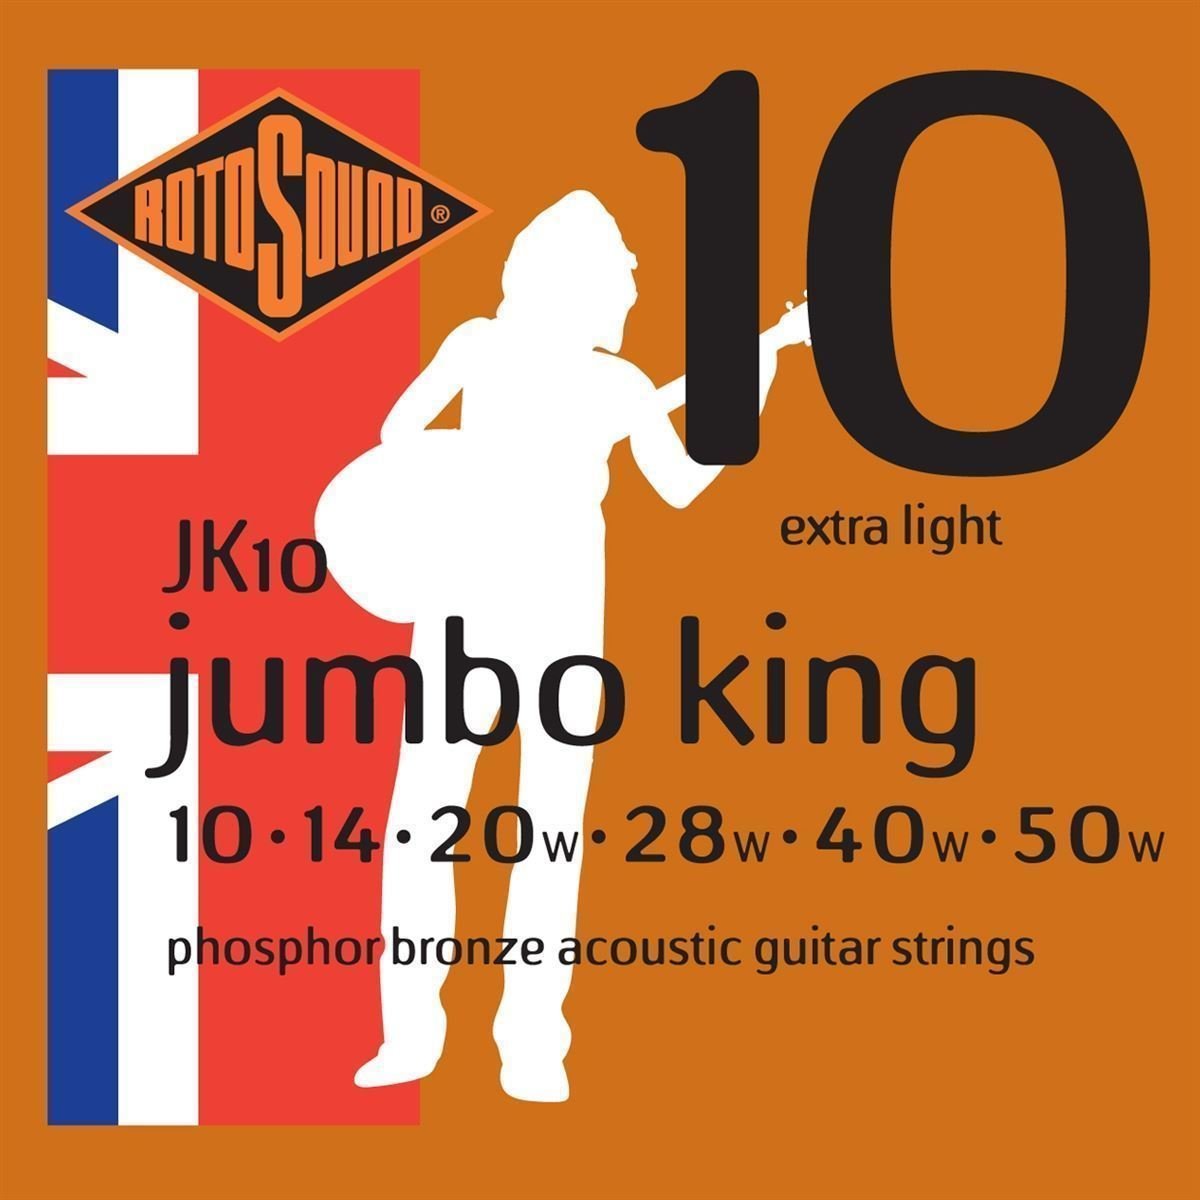 Cordes de guitares acoustiques Rotosound JK10